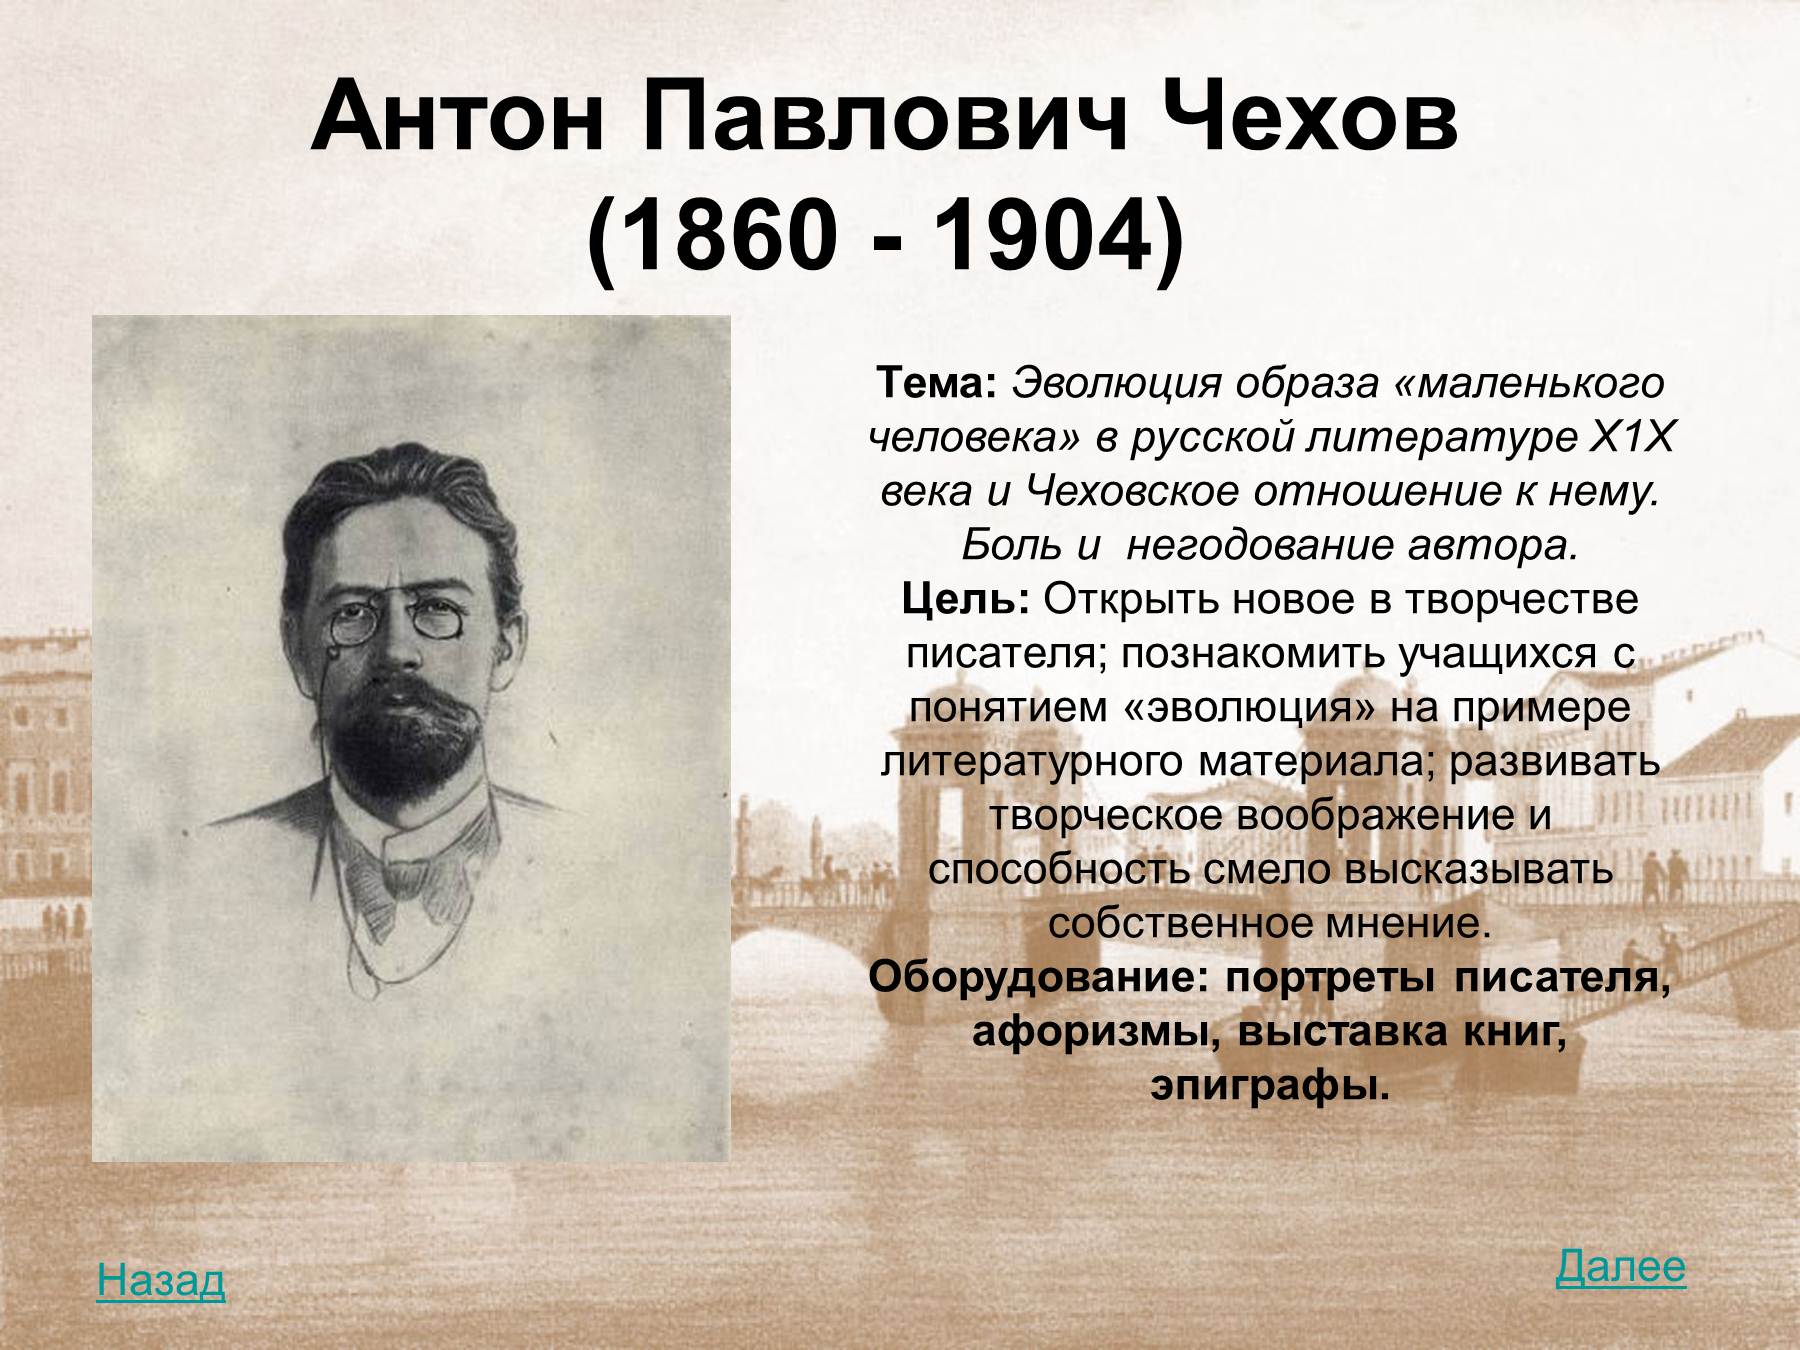 Написать жизнь чехова. Чехов а.п. (1860-1904). Чехов 1904.